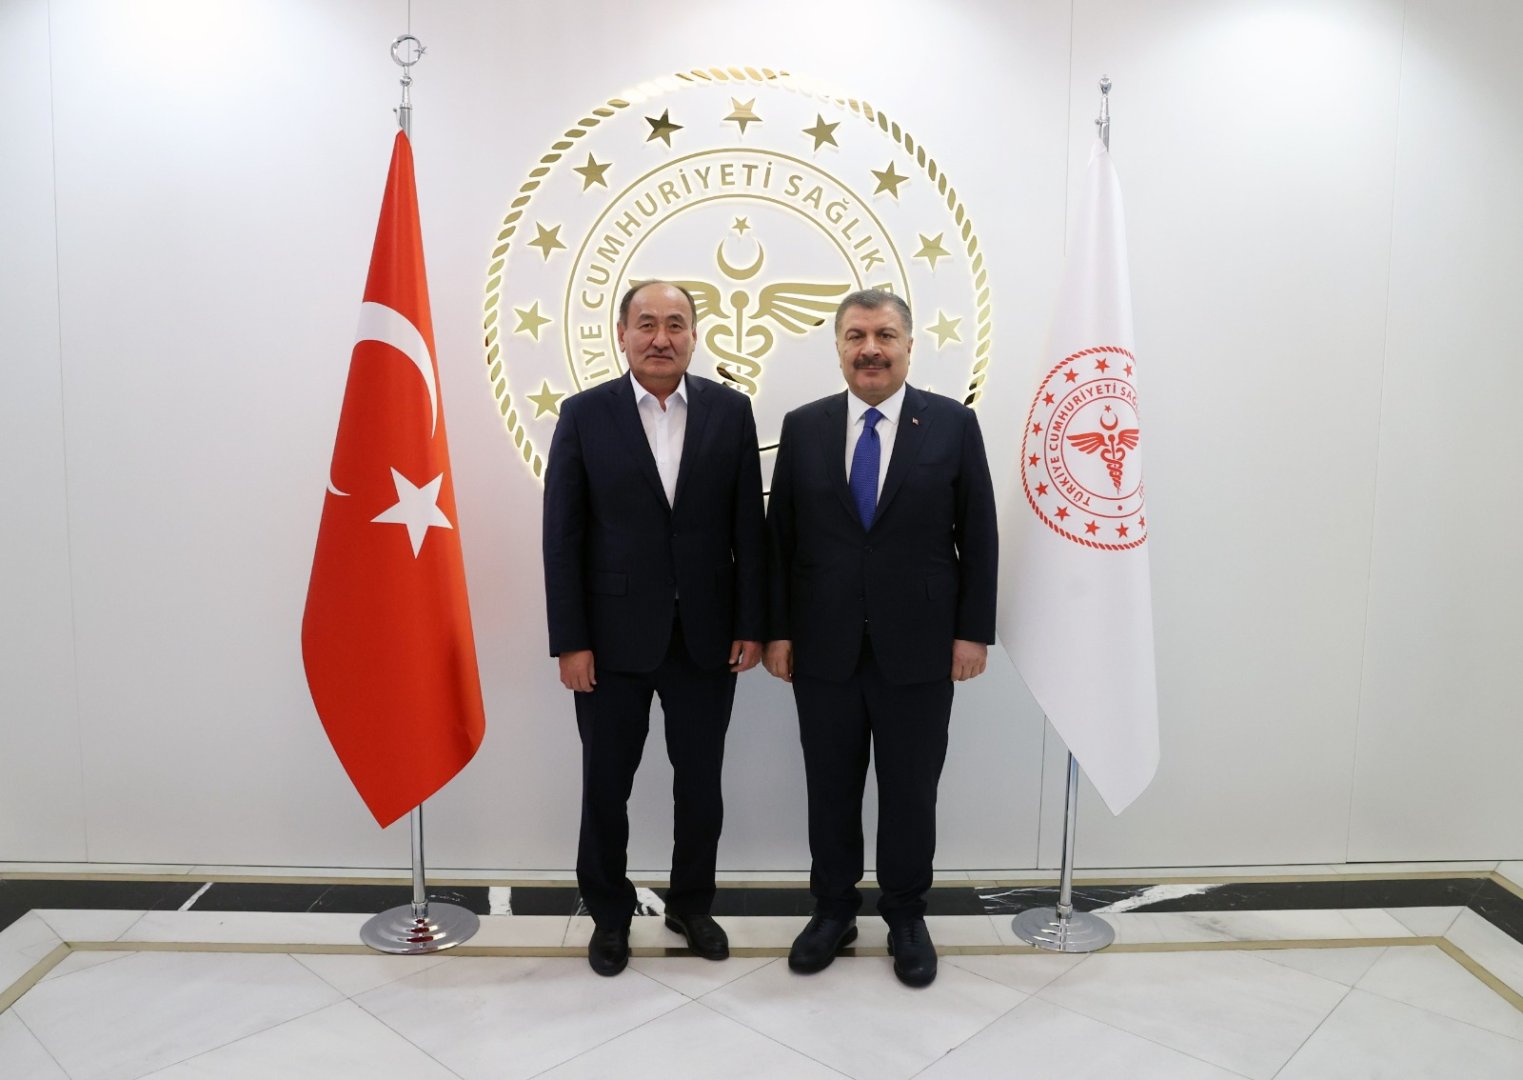 Türkiyə və Qırğızıstan səhiyyə sahəsində əməkdaşlığı genişləndirir